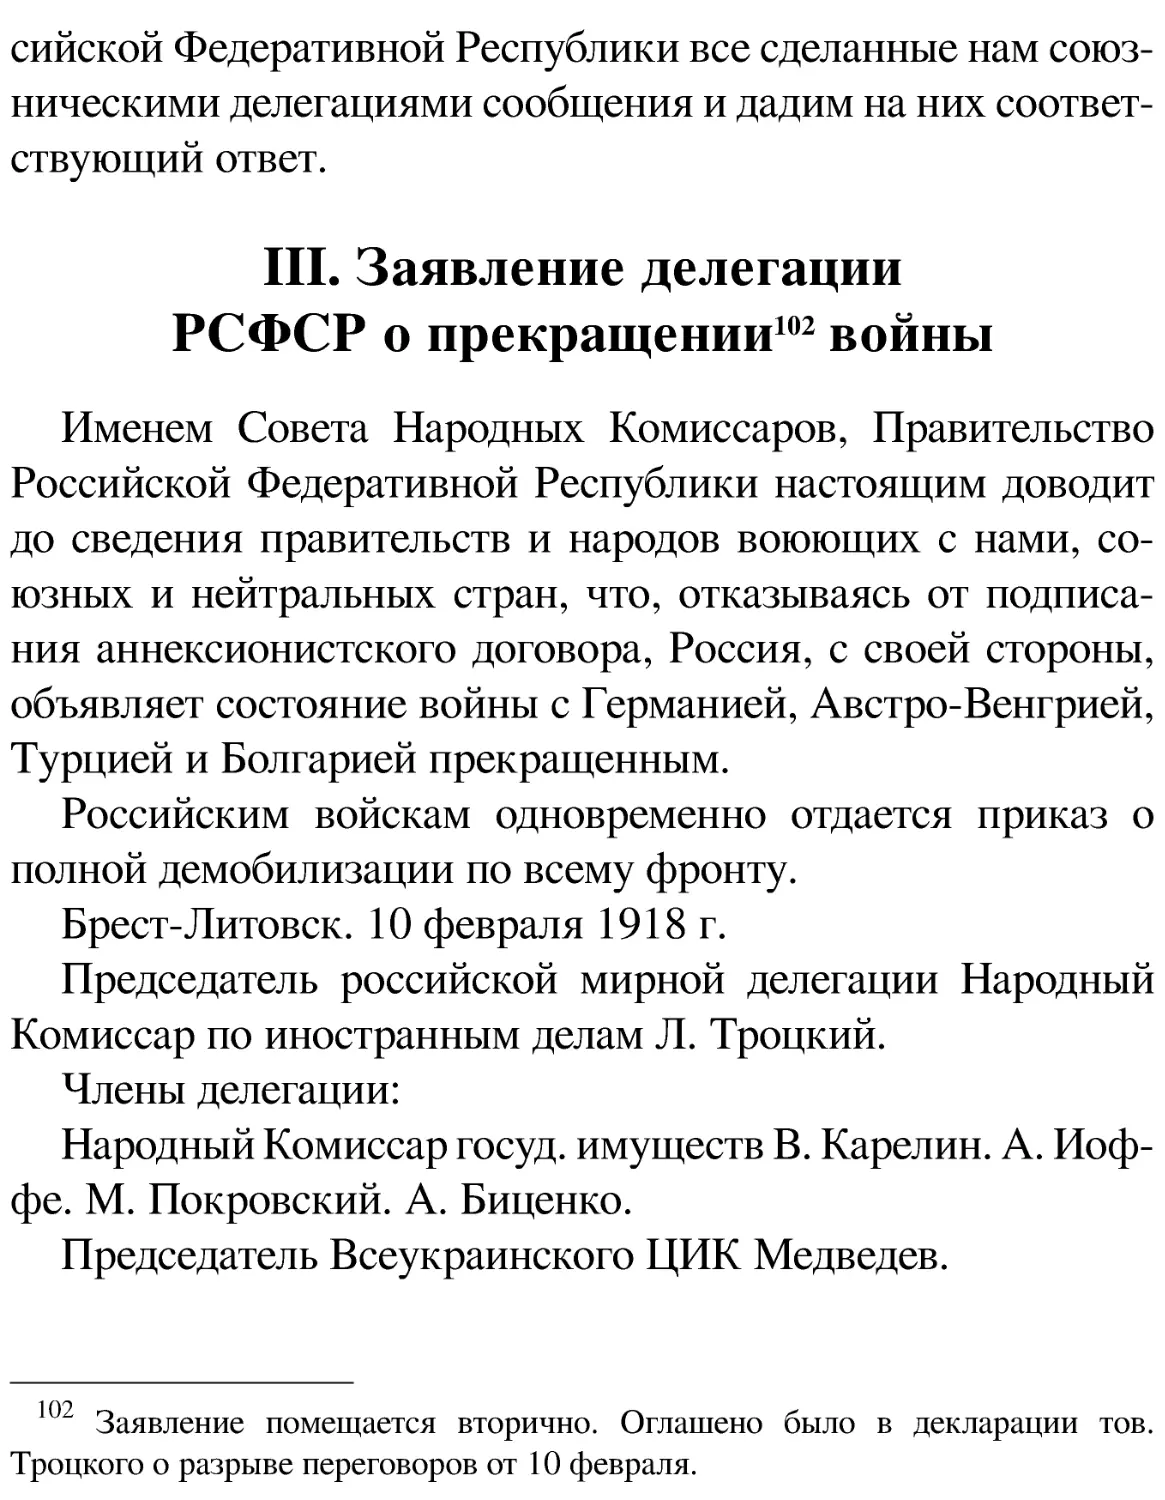 III. Заявление делегации РСФСР о прекращении[102] войны